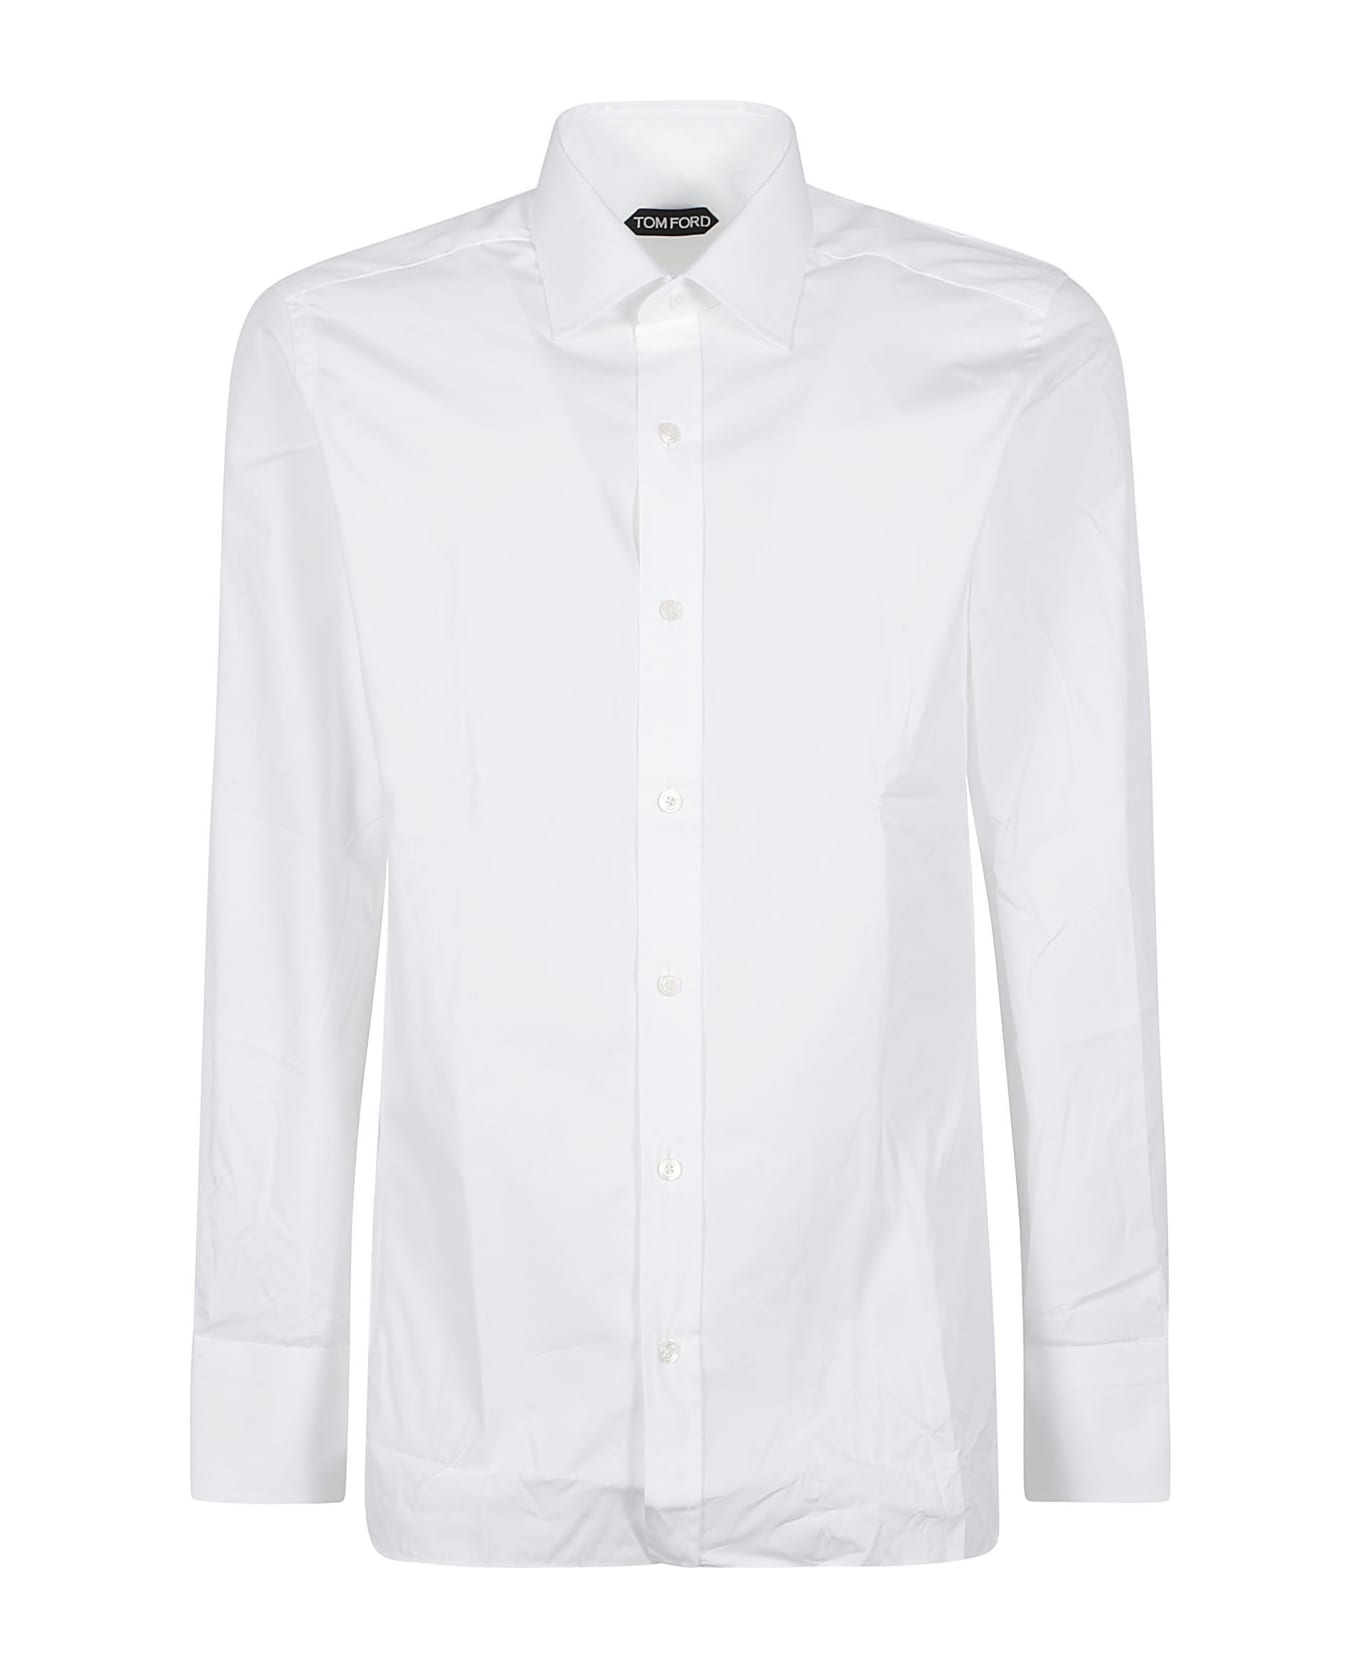 Tom Ford Round Hem Plain Shirt - Optical White